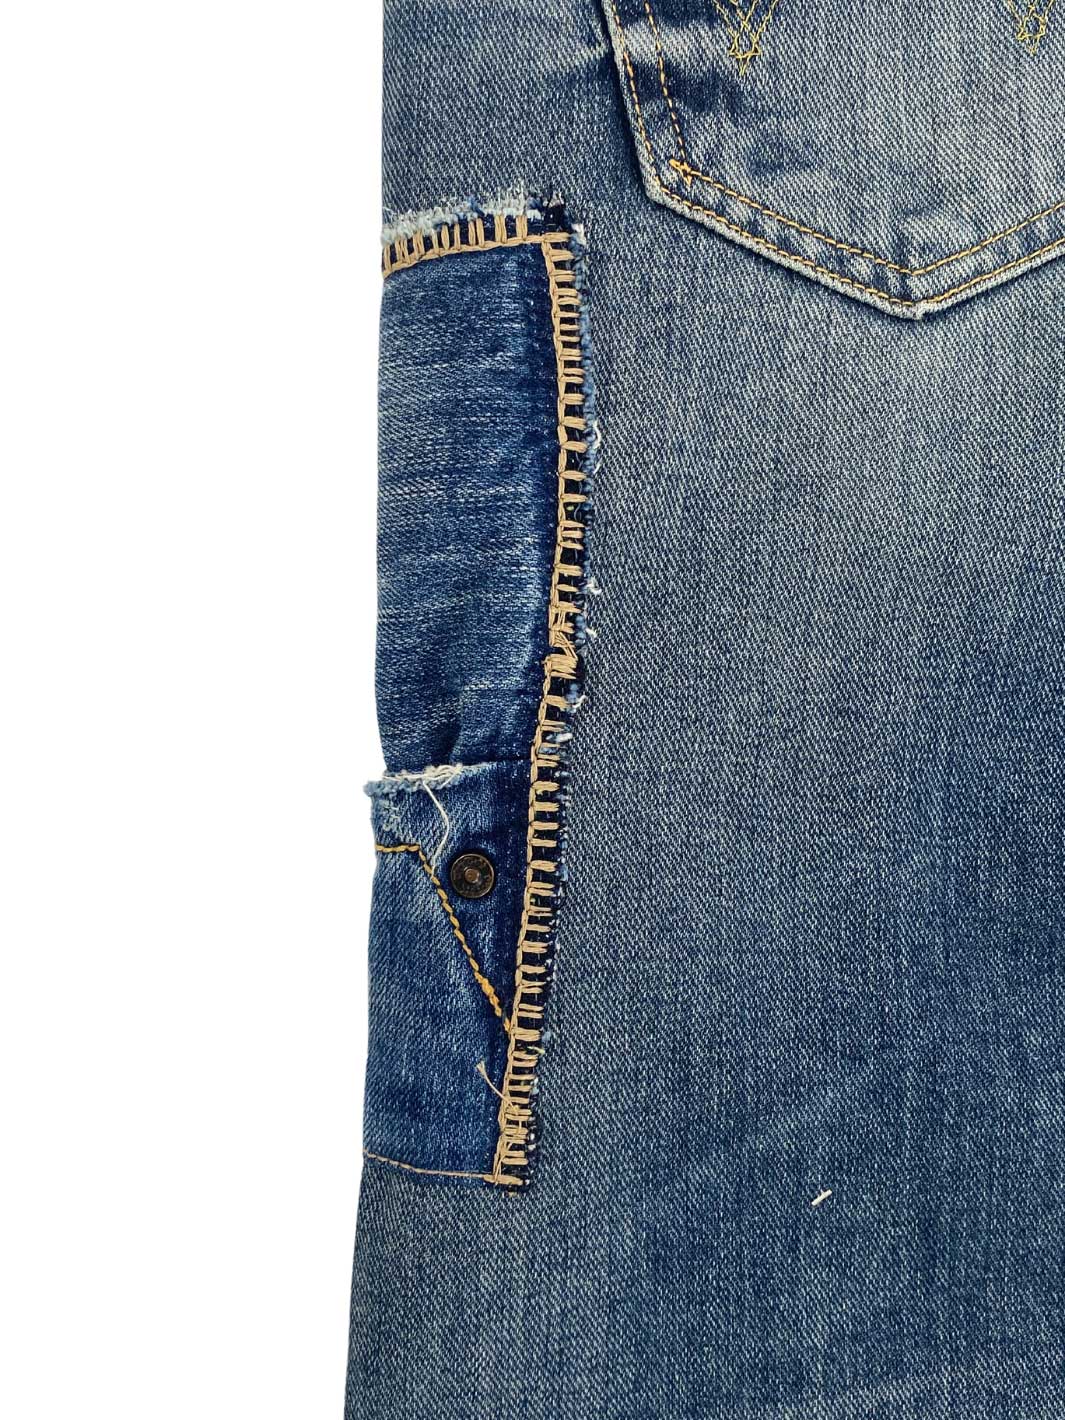 Männer Vintage Jeans mittelblau diverse Zier Stitchings 100% Baumwolle Second Life